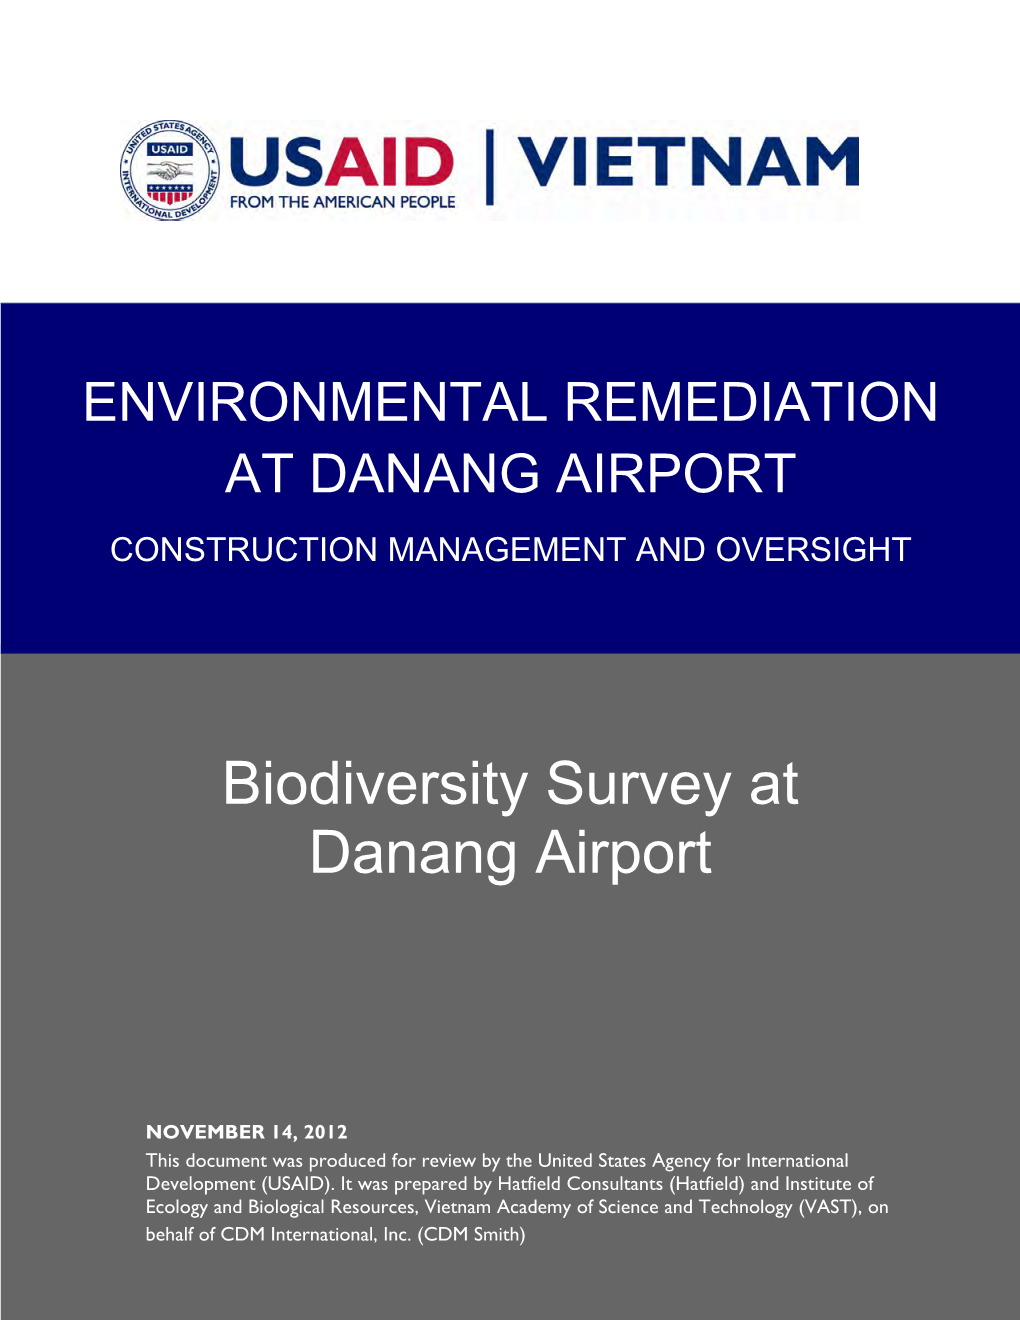 Biodiversity Survey at Danang Airport